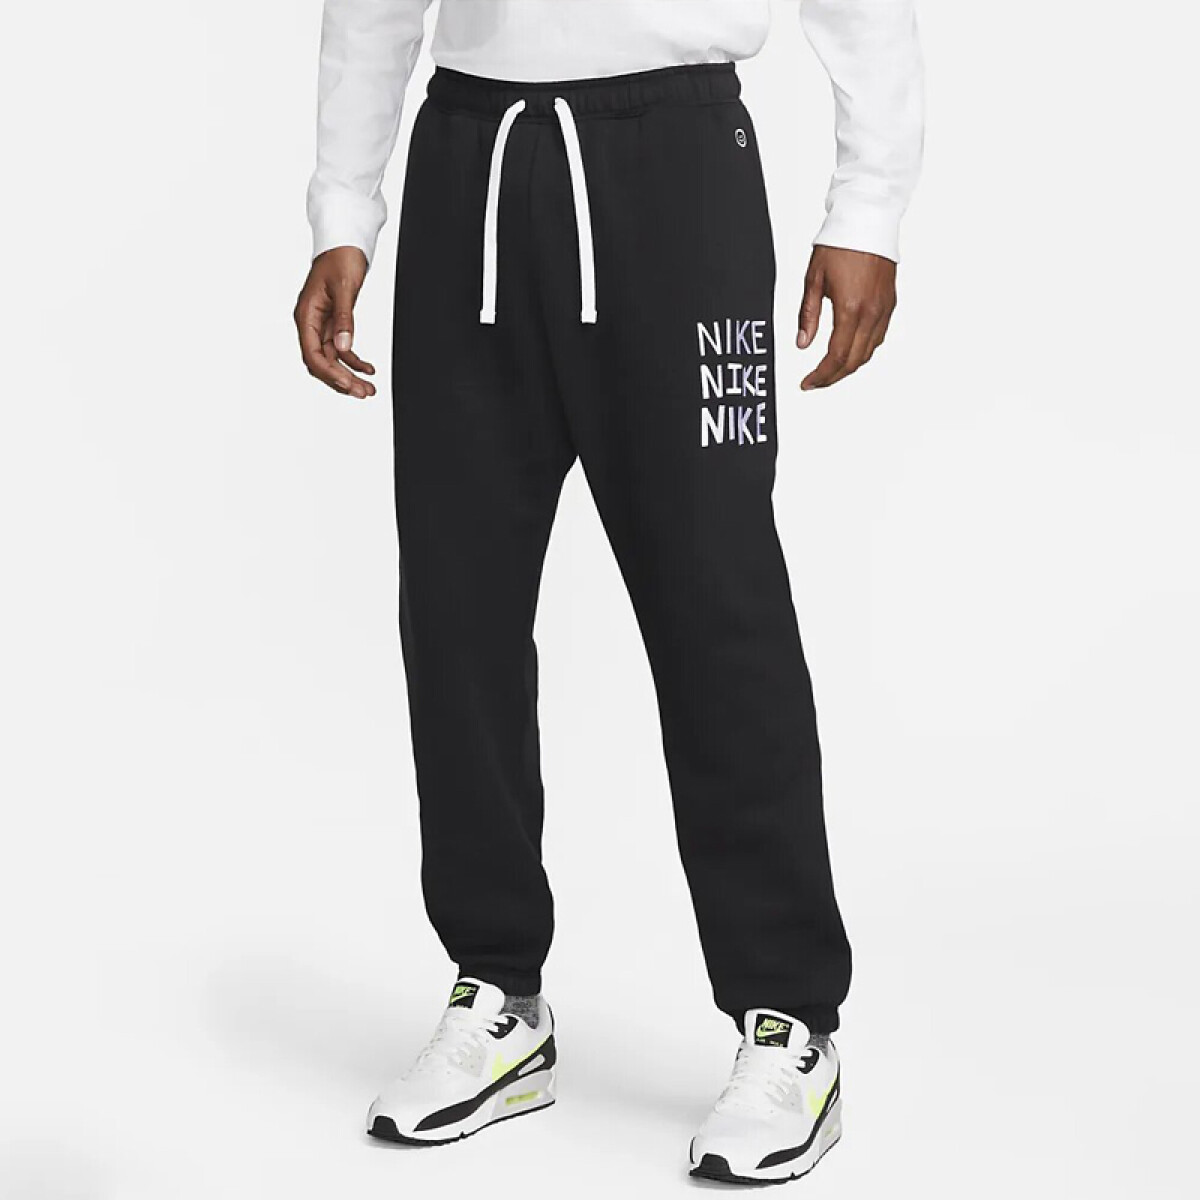 Pantalon Nike Moda Hombre Hbr-C BB Jggr Black - S/C 